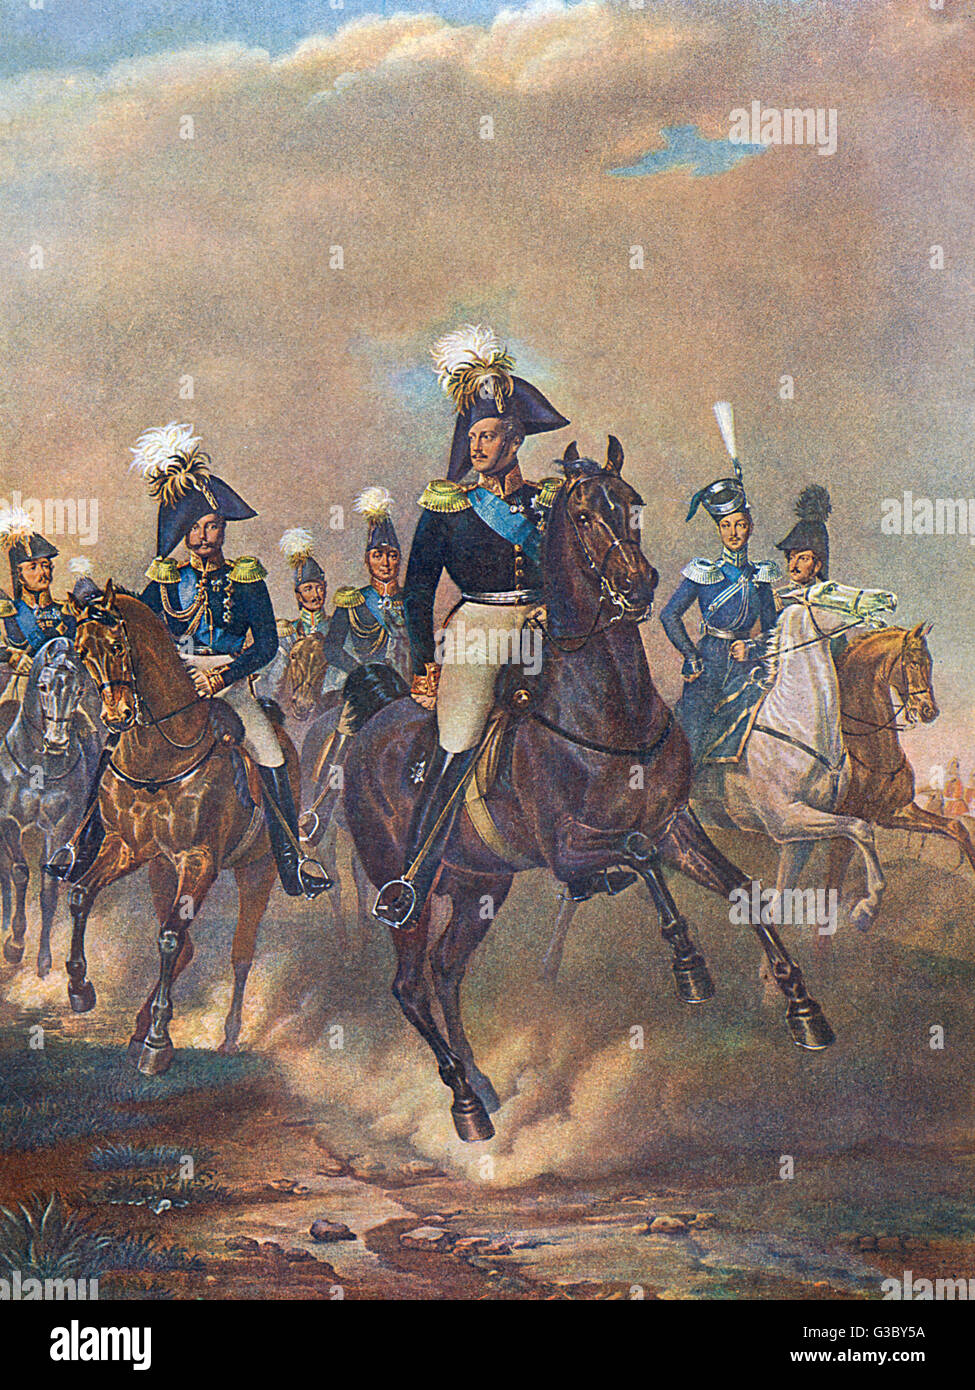 Tsar Nicholas I (Nikolai I Pawlowitsch) von Russland (1796-1855 regierte 1825-1855).  Hier zu sehen mit anderen auf dem Pferderücken, möglicherweise während der Ungarn-Aufstand von 1849.      Datum: ca. 1849 Stockfoto